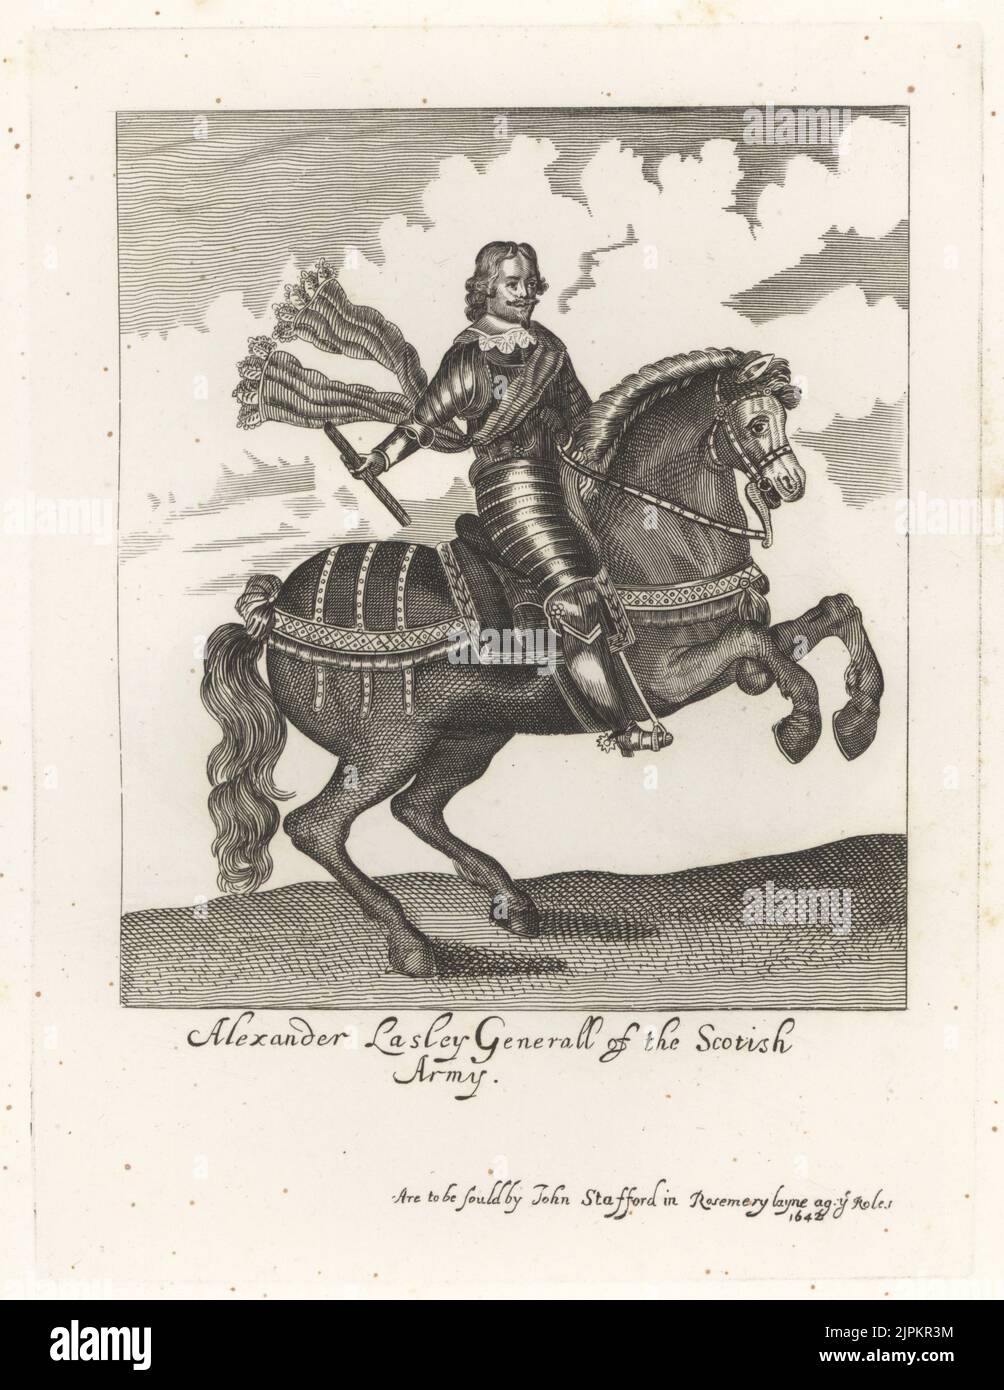 Alexander Leslie, 1st comte de Leven, général écossais pour la cause parlementaire, c.1580-1661. Le roi Charles Je lui rendit à Newark-on-Trenet en 1646. Dans la barbe van Dyke, collier de dentelle, costume d'armure de plaque, de la ceinture, monté sur un cheval, tenant un bâton. Alexander Lasley, général de l'armée écossaise. De l'étrange imprimé équestre de Earl Spencer's Clarendon, vendu par John Stafford, Rosemary Layne. Gravure sur plaque de coperplate de la galerie des portraits rares de Samuel Woodburn, composée de plaques originales, George Jones, 102 St Martin's Lane, Londres, 1816. Banque D'Images